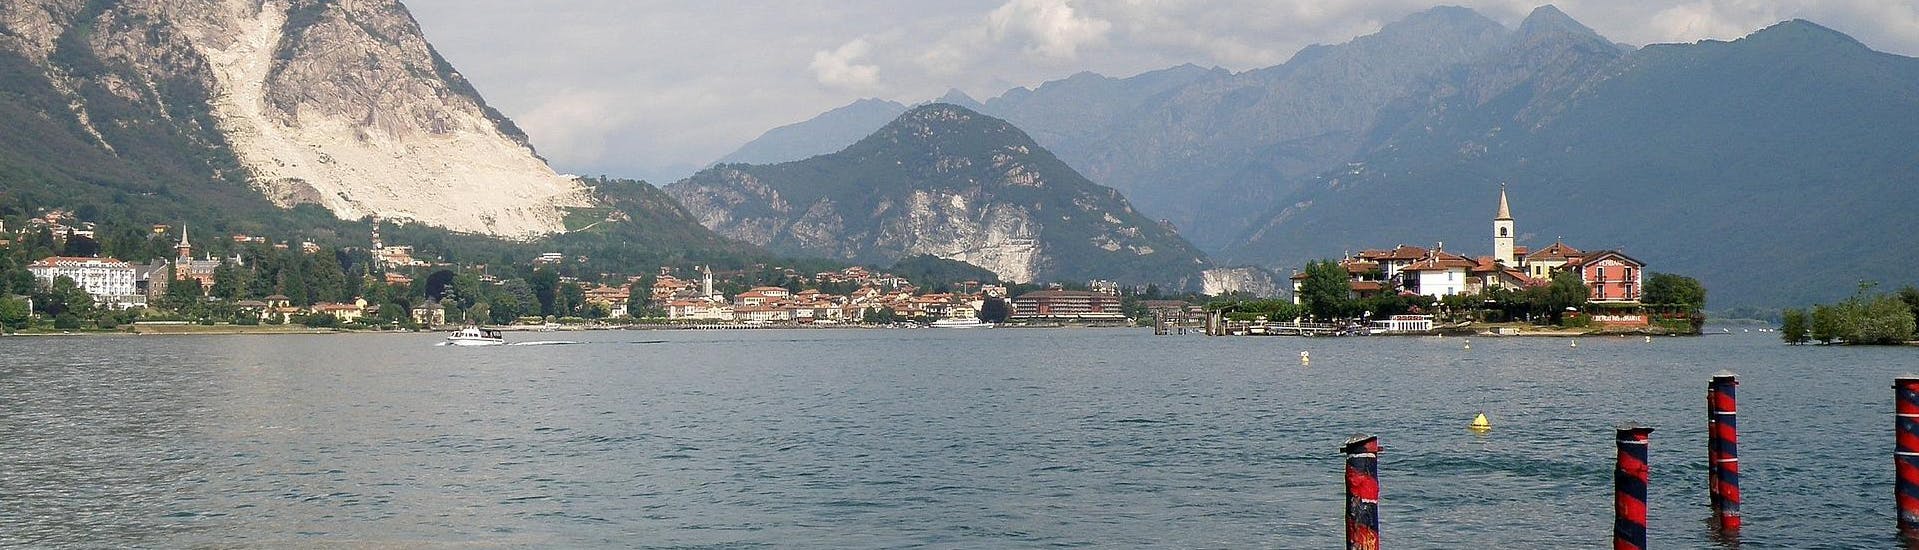 Vue de l'Isola dei Pescatori lors d'une excursion en bateau.